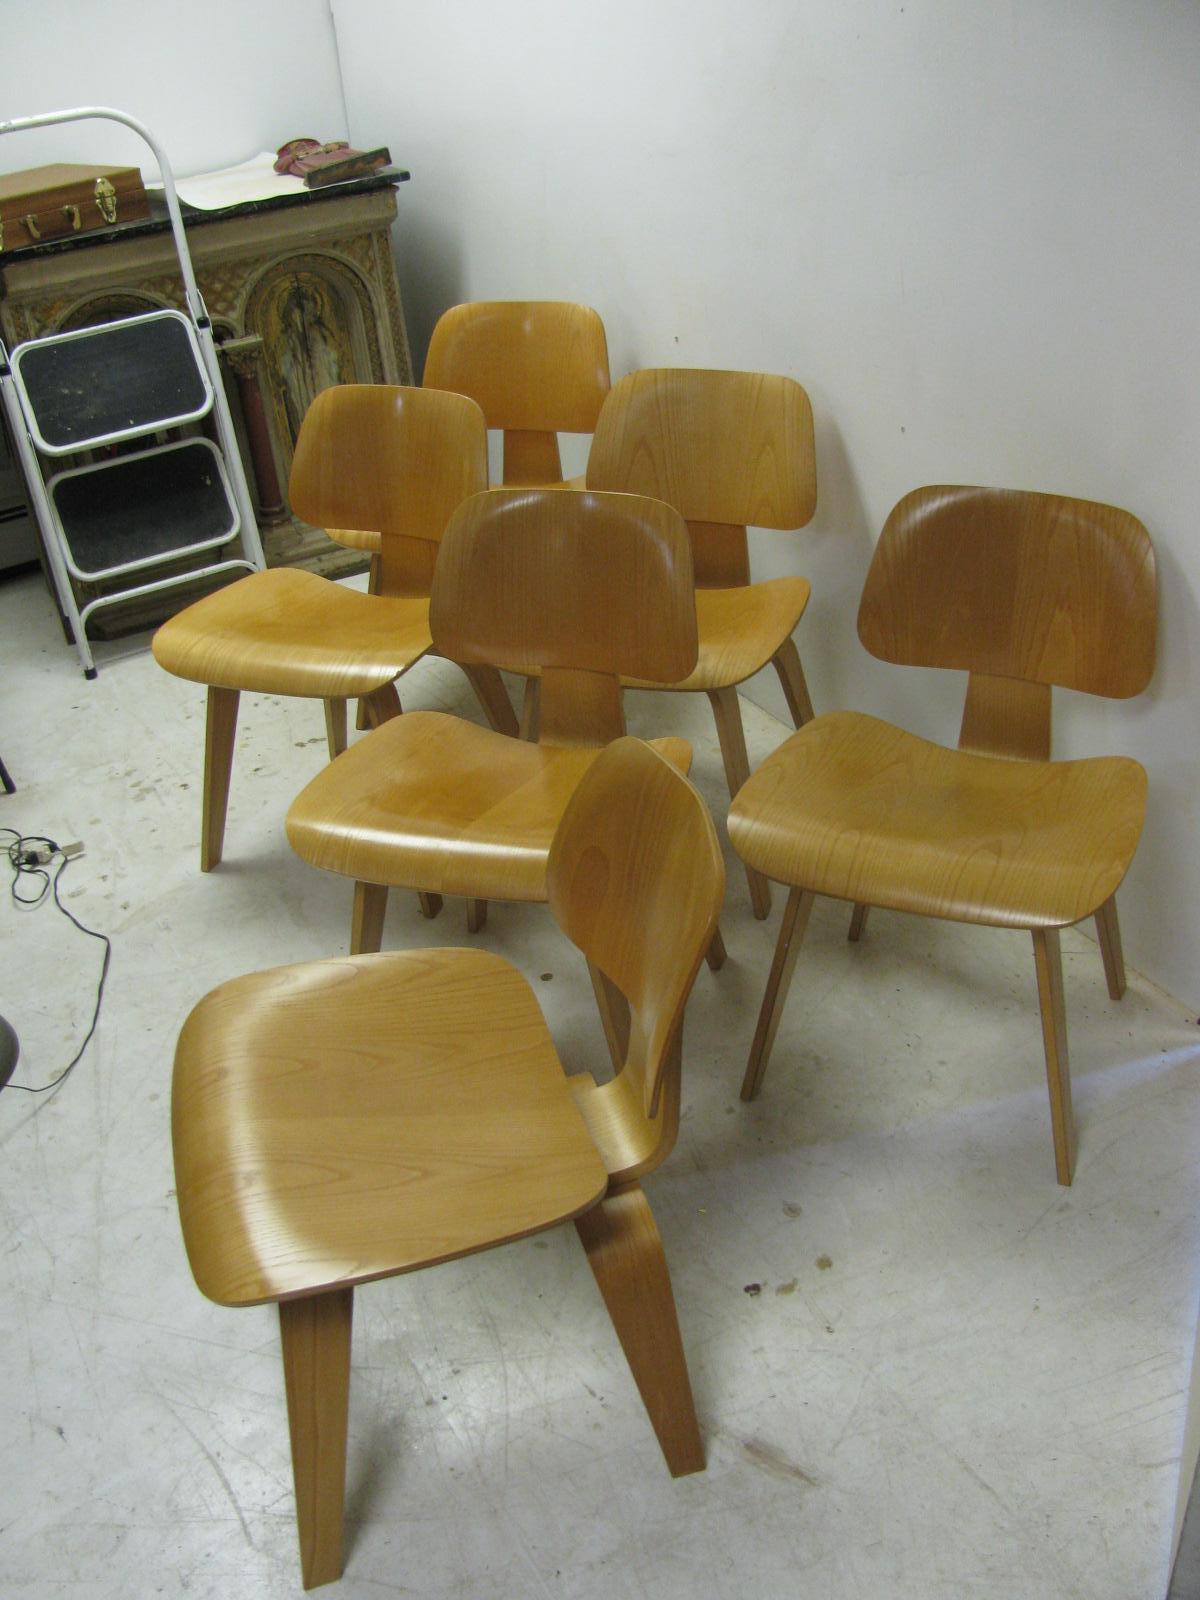 Ikonische DCW-Eames-Esszimmerstühle aus Eichenholz. Die Stühle wurden über 30 Jahre lang gelagert:: so dass sie nur wenig abgenutzt sind. Herman Miller-Metallschilder an vier der sechs Exemplare. Die Stühle stammen aus den 1970er Jahren.